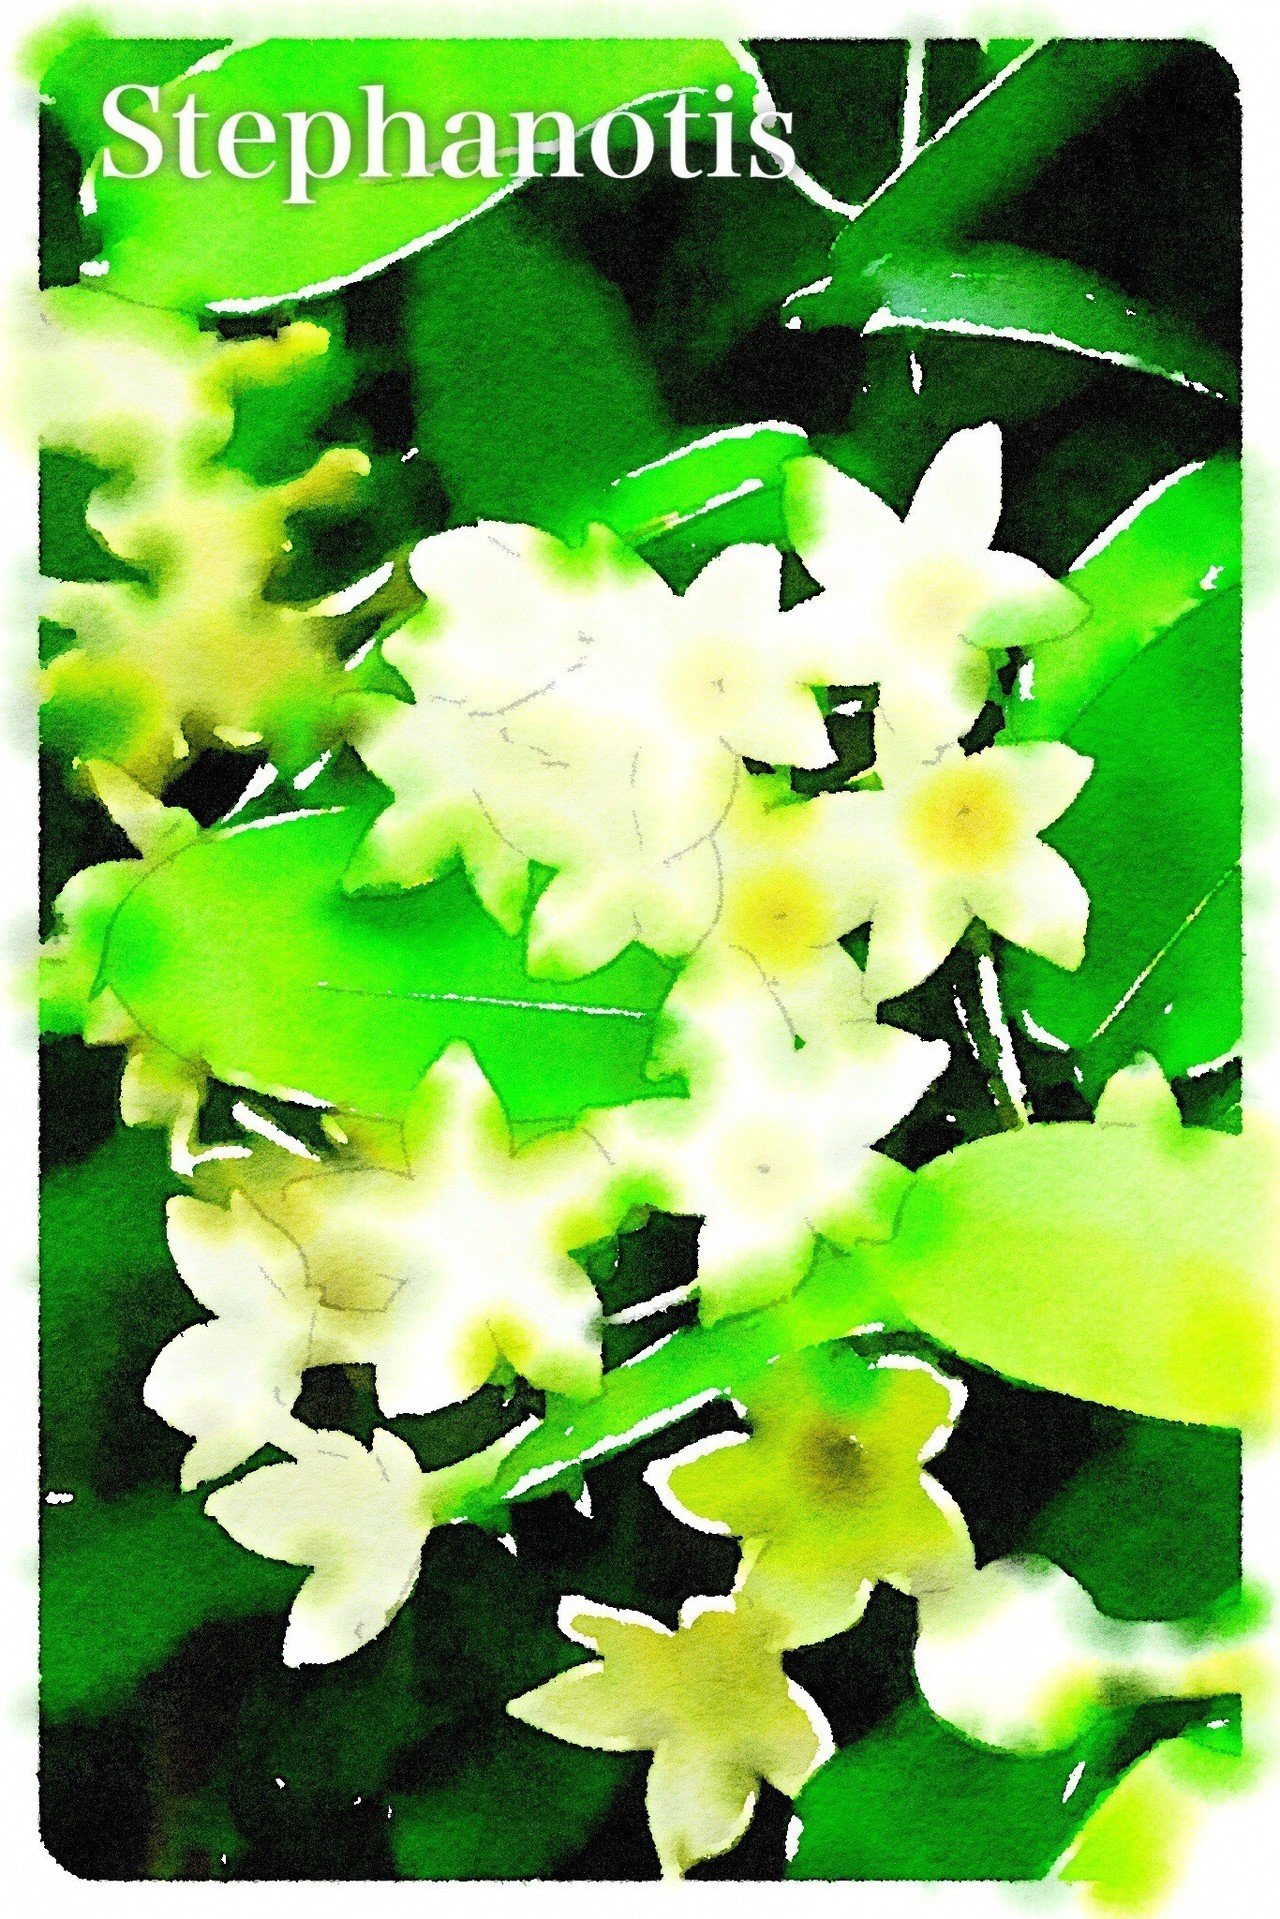 おそようございます 今日は7月26日 今日から実質的に夏休みという学生の方も多いのでは 誕生花は ステファノティス ジャスミンに花 の形が似ているため マダガスカルジャスミンとの別名がありますが ジ Tockni Note